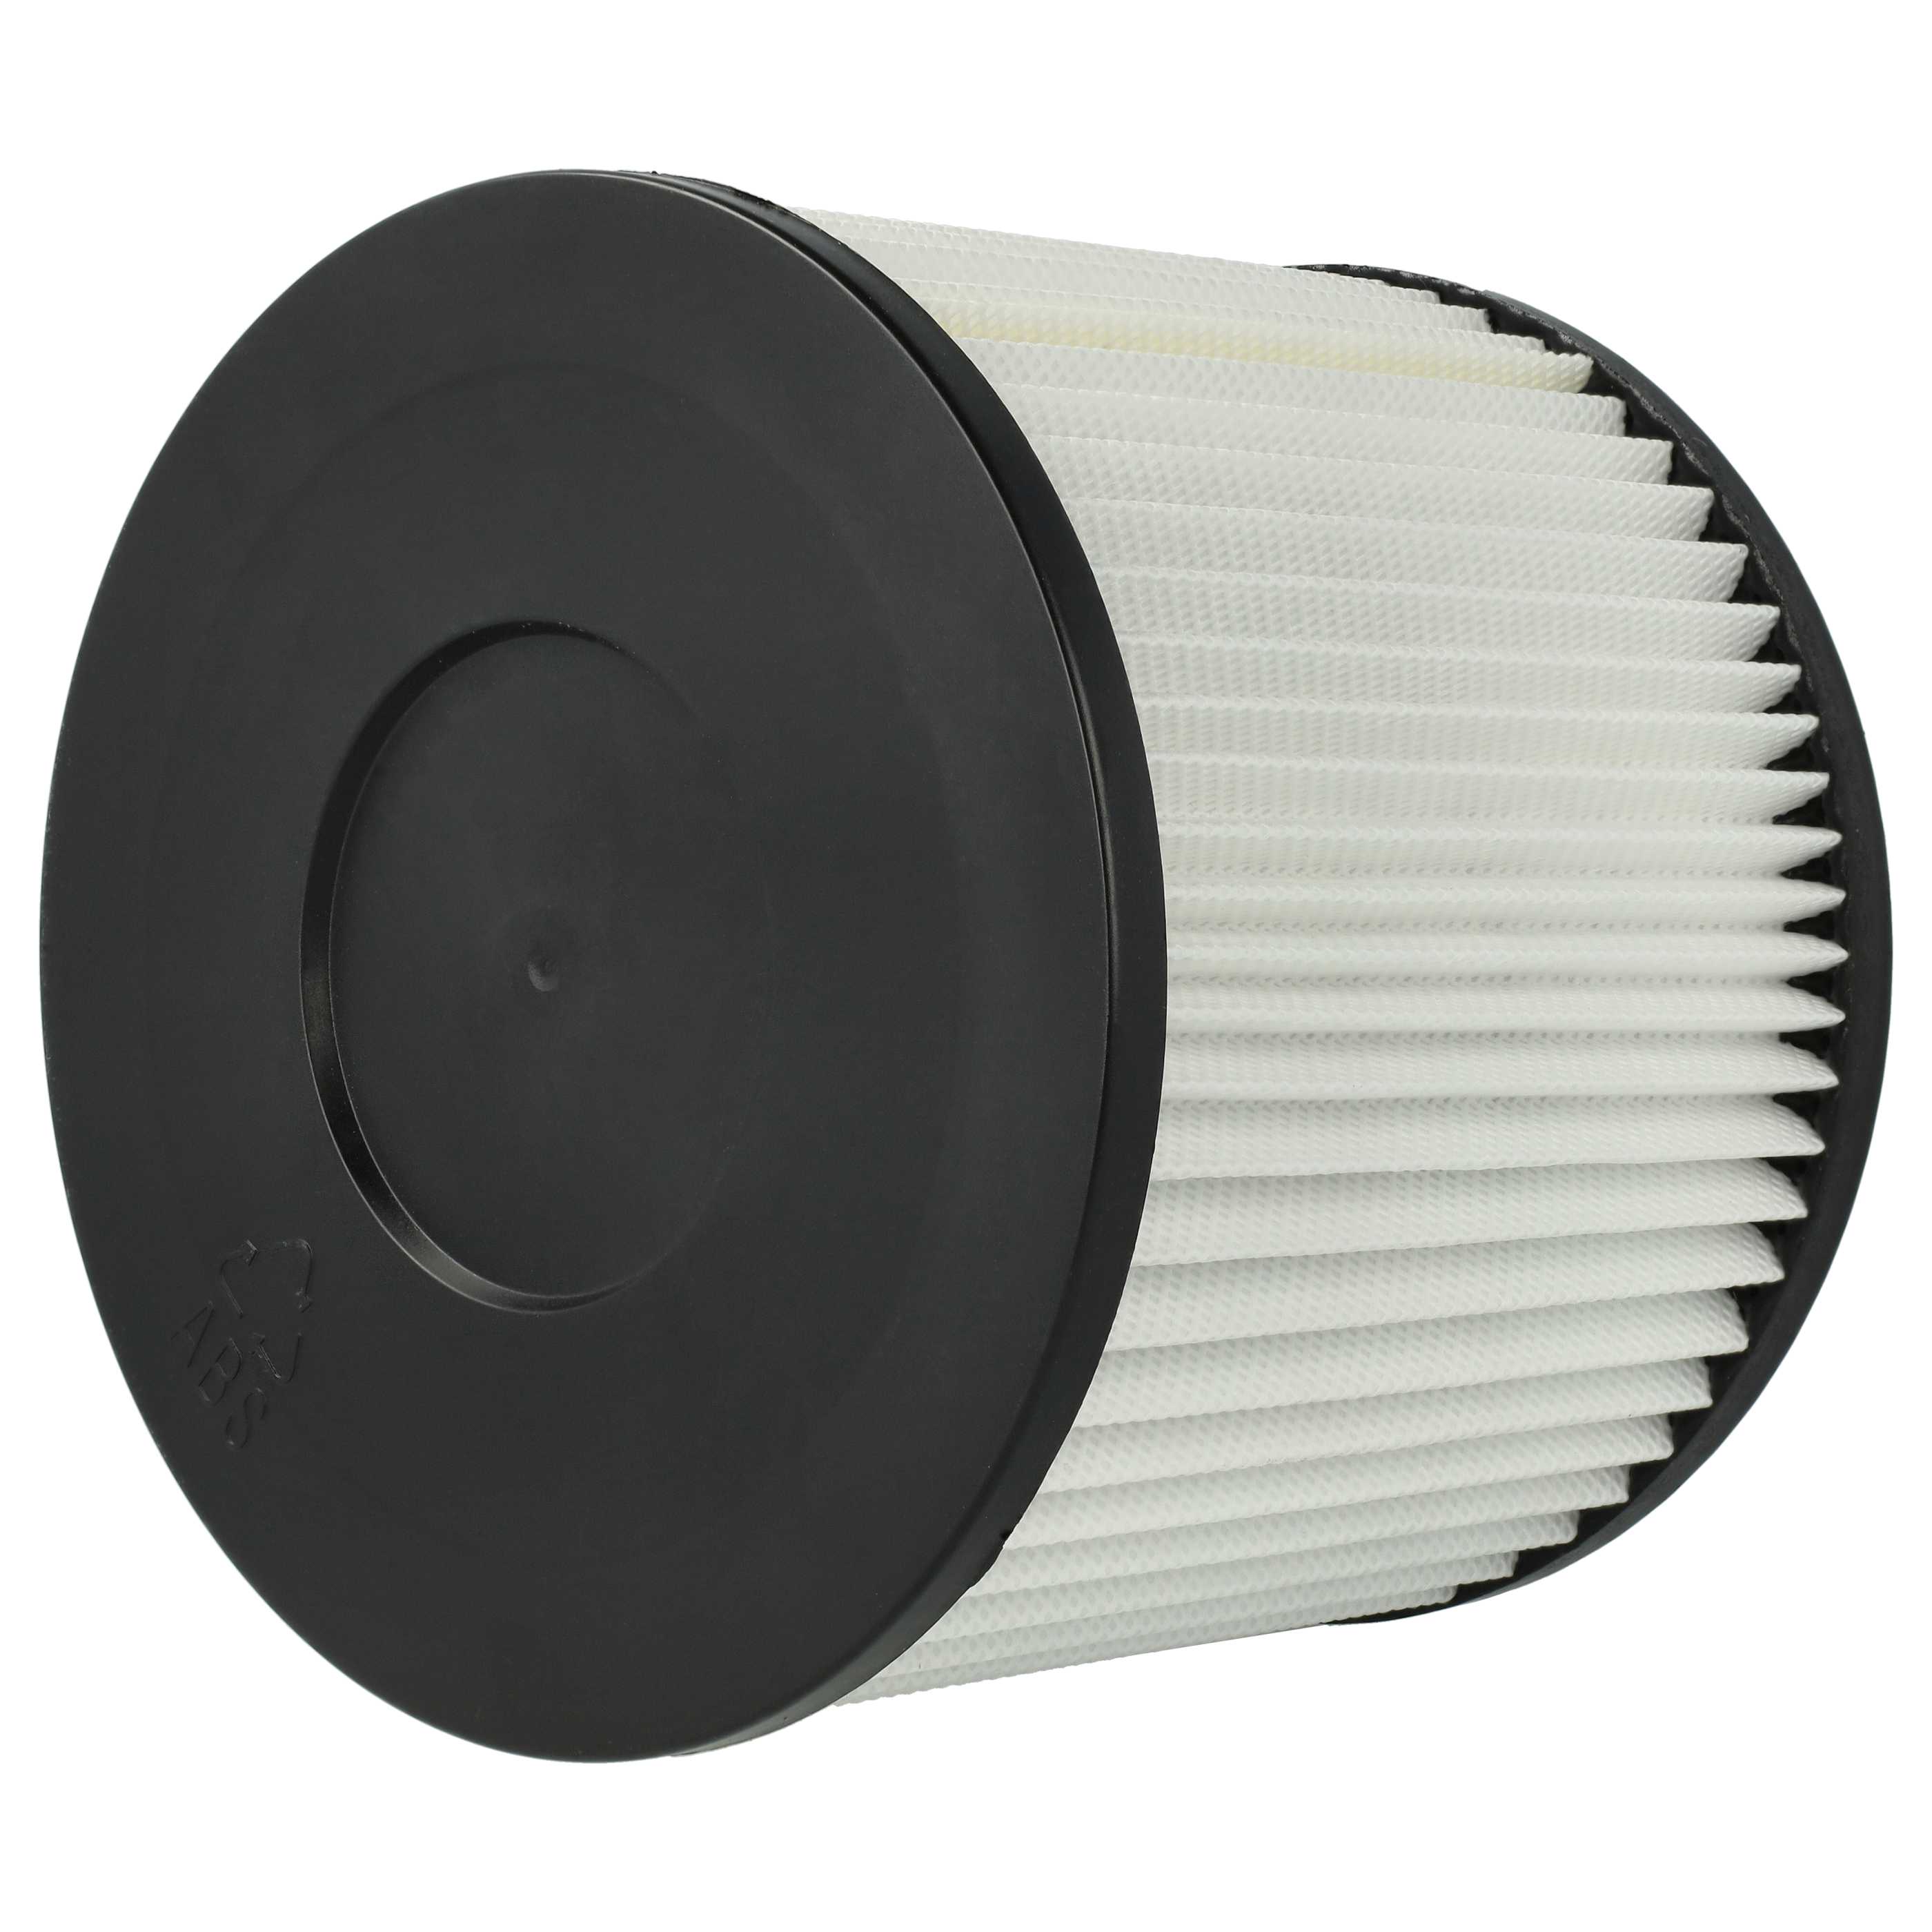 3x Filtro reemplaza Scheppach 7907702716 para aspiradora - filtro Hepa blanco